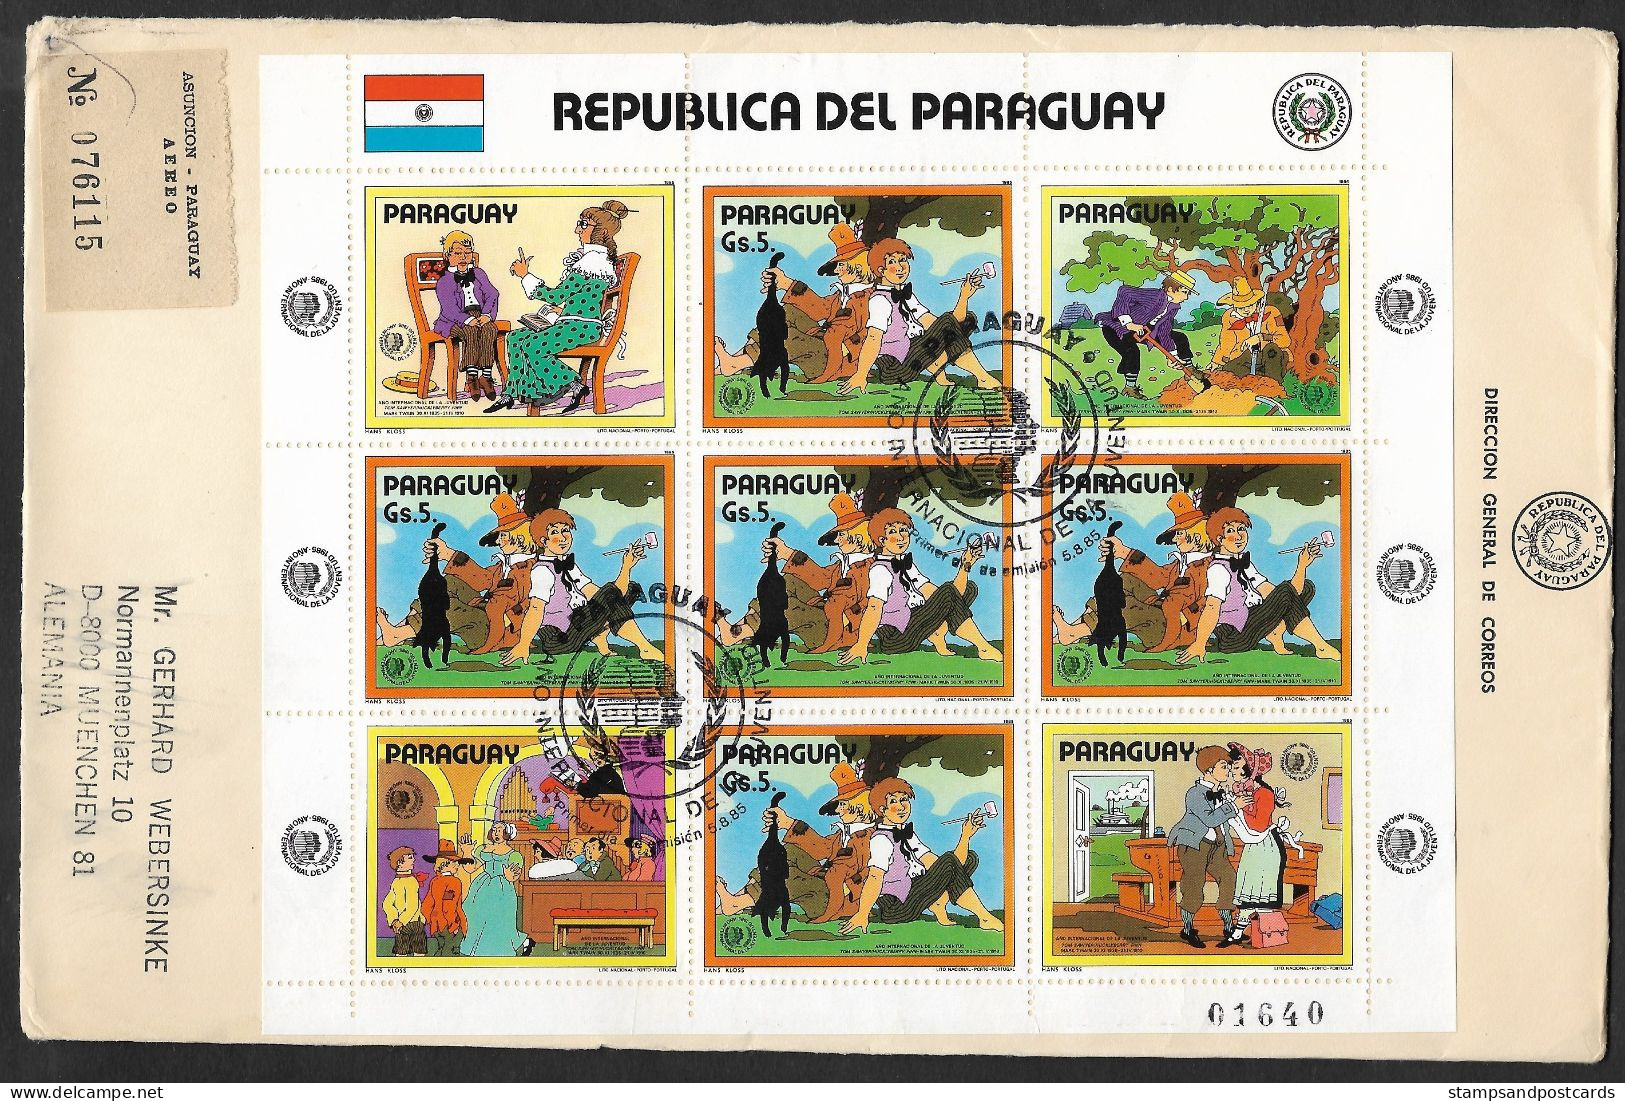 Paraguay 1985 FDC Recommandée Mark Twain Huckleberry Finn Tom Sawyer Année Internationale Jeunesse R FDC Int. Youth Year - Märchen, Sagen & Legenden